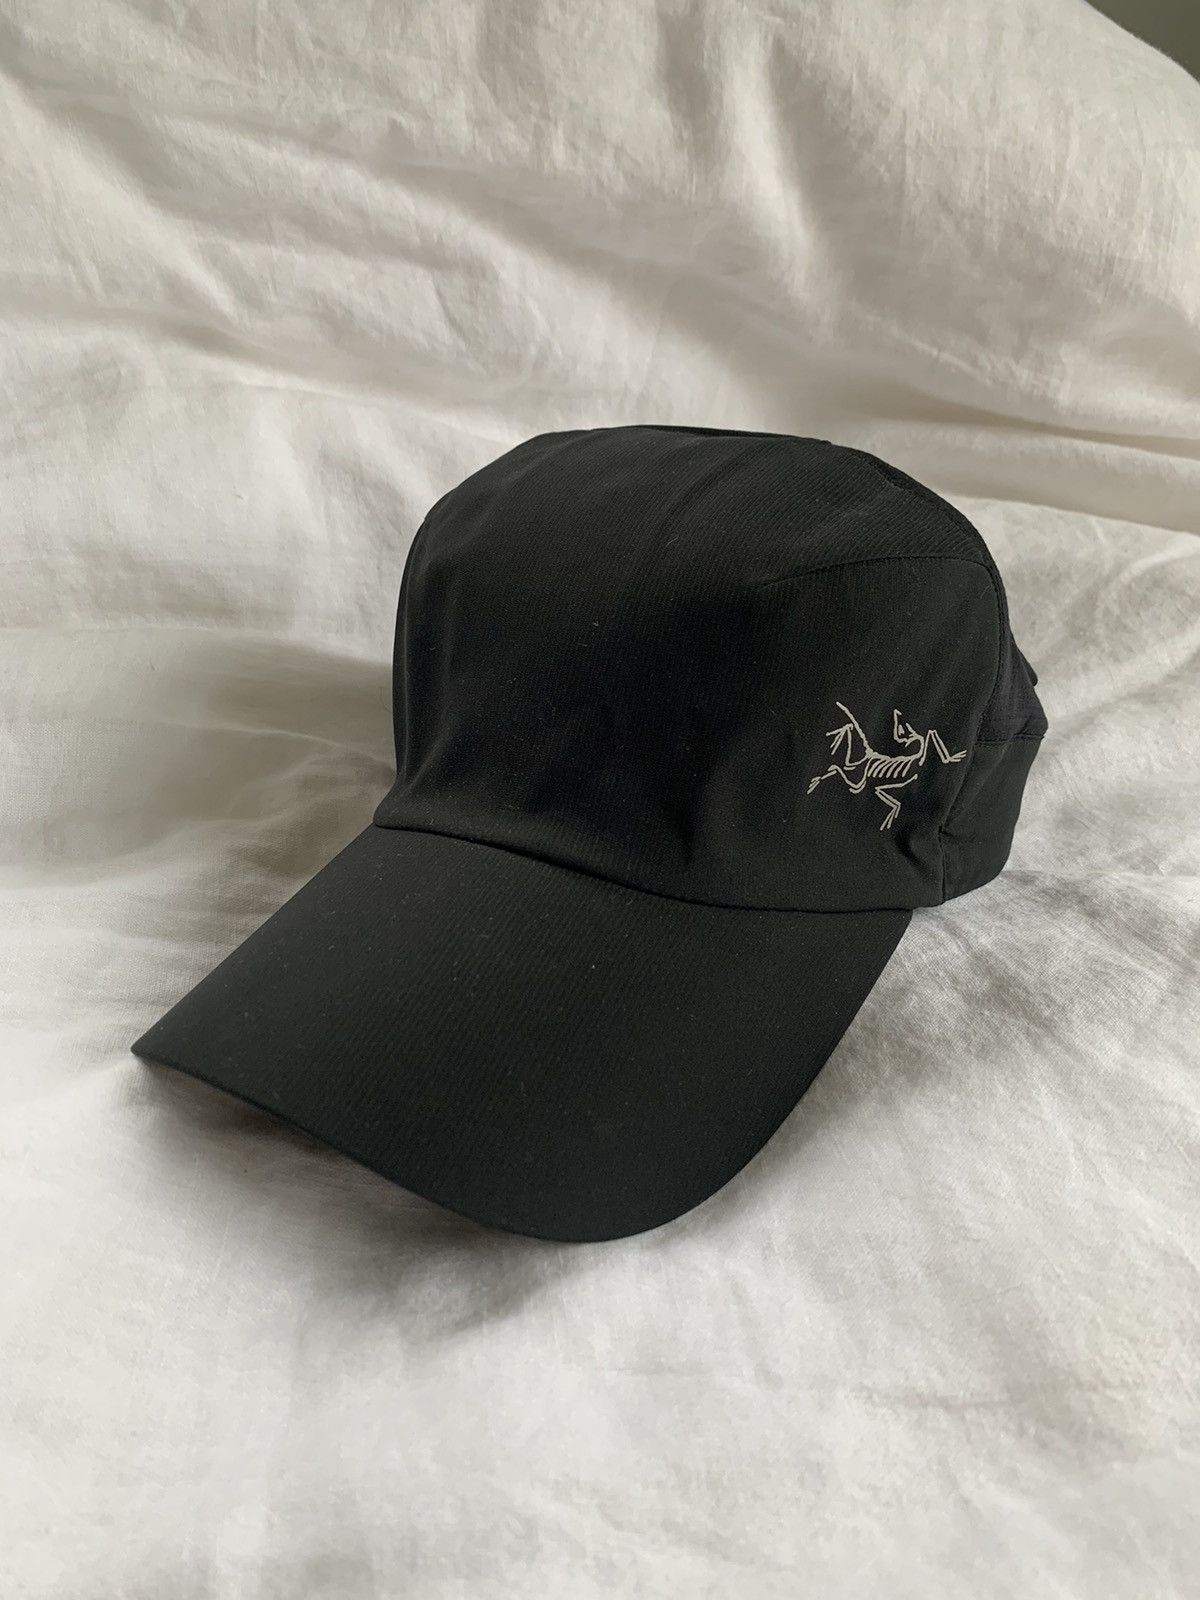 Arc'Teryx Black Arcteryx Calvus Hat Cap Size L/XL | Grailed